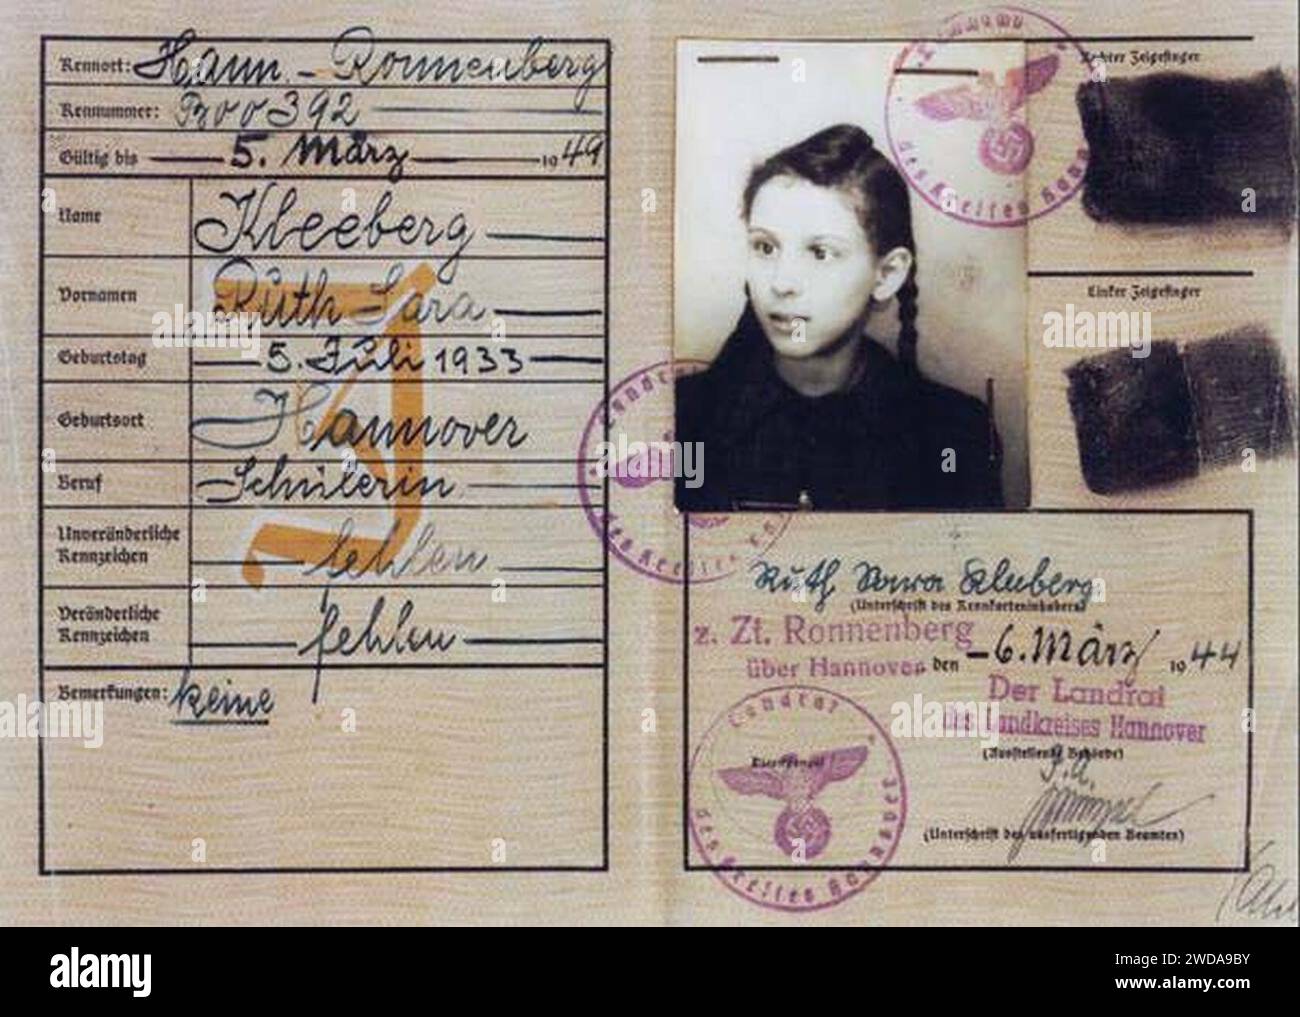 1944-03-06 Personalausweis der Schülerin Ruth Sara Kleeberg a Ronnenberg, ausgestellt vom Landrat des Landkreises Hannover. Foto Stock